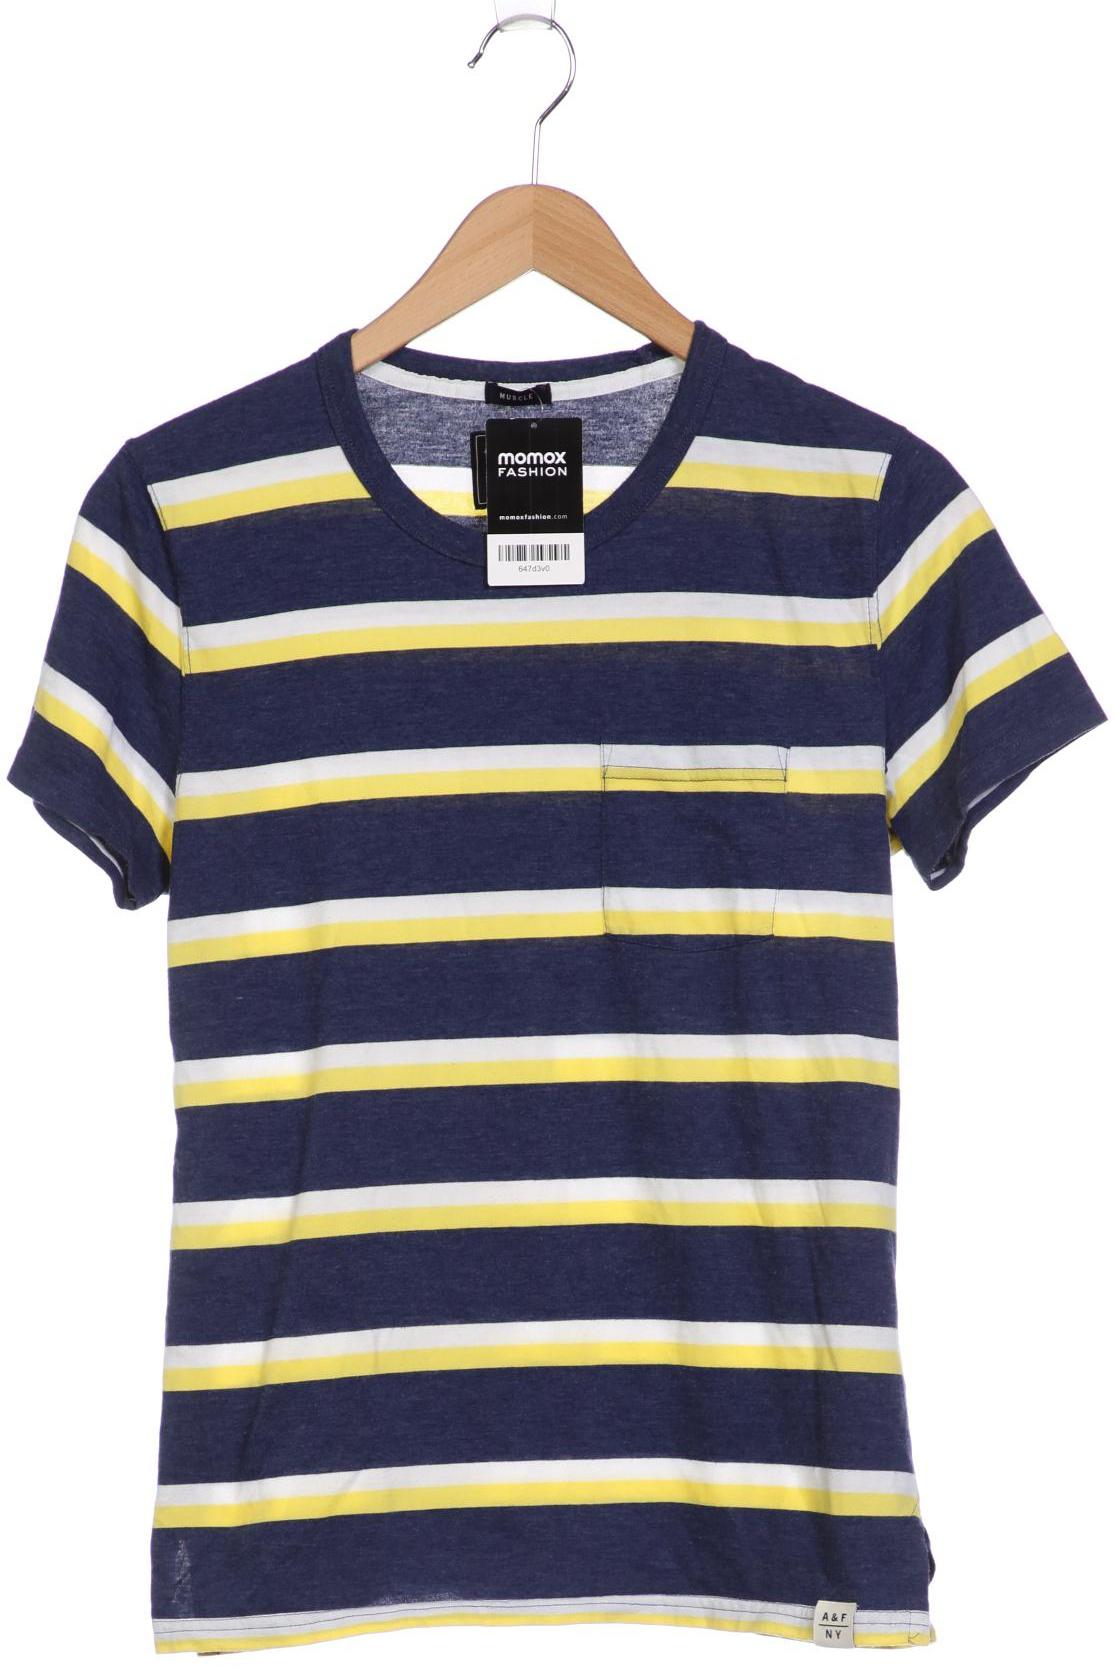 Abercrombie & Fitch Herren T-Shirt, marineblau, Gr. 46 von Abercrombie & Fitch